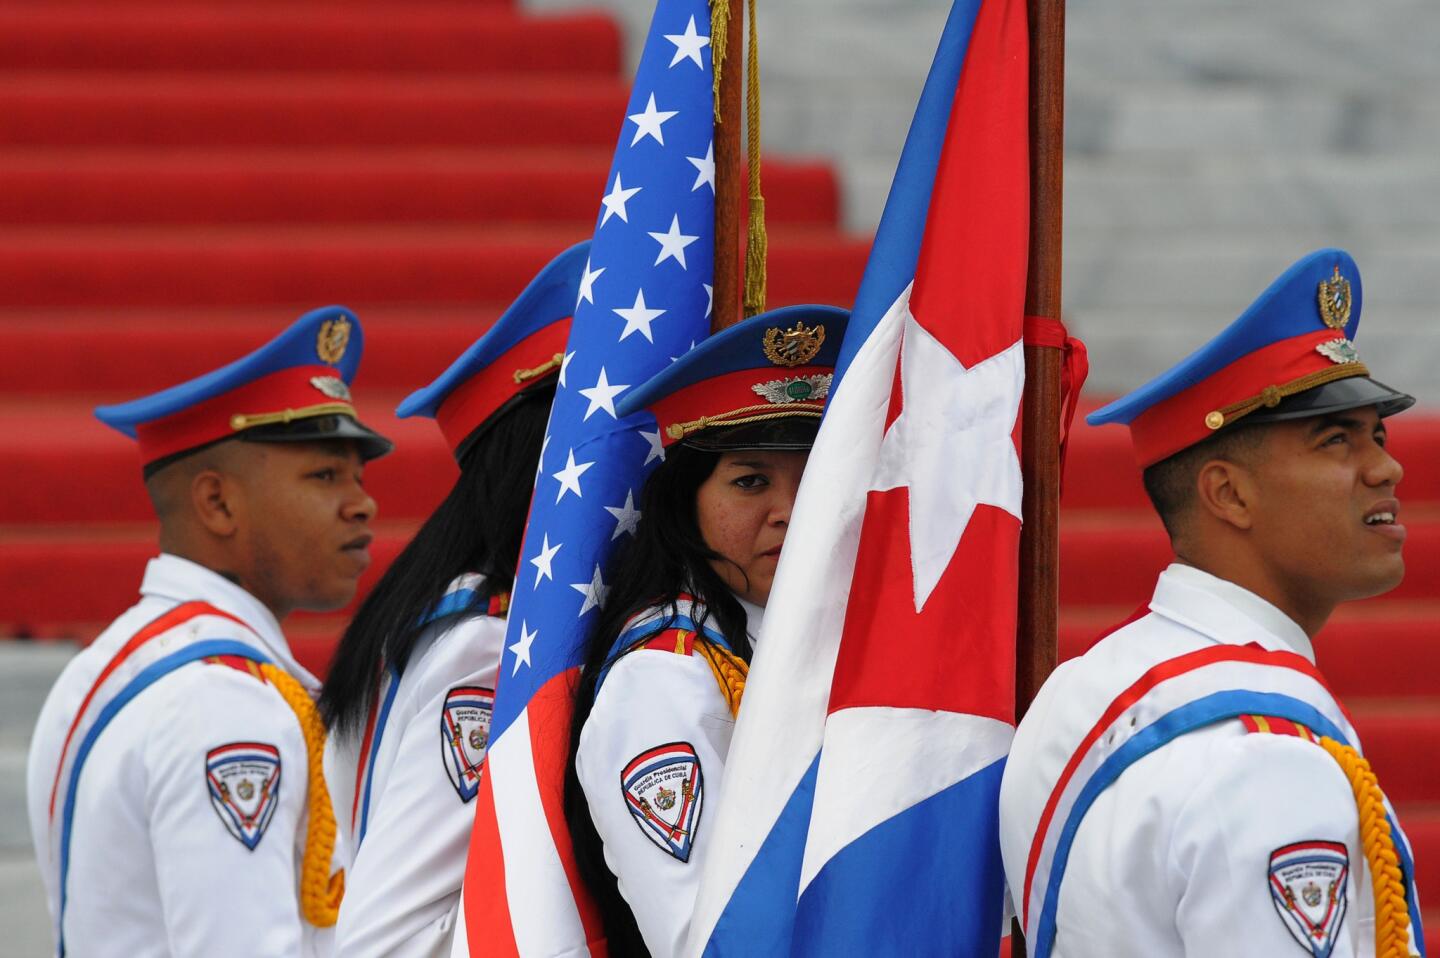 Cuban cadets